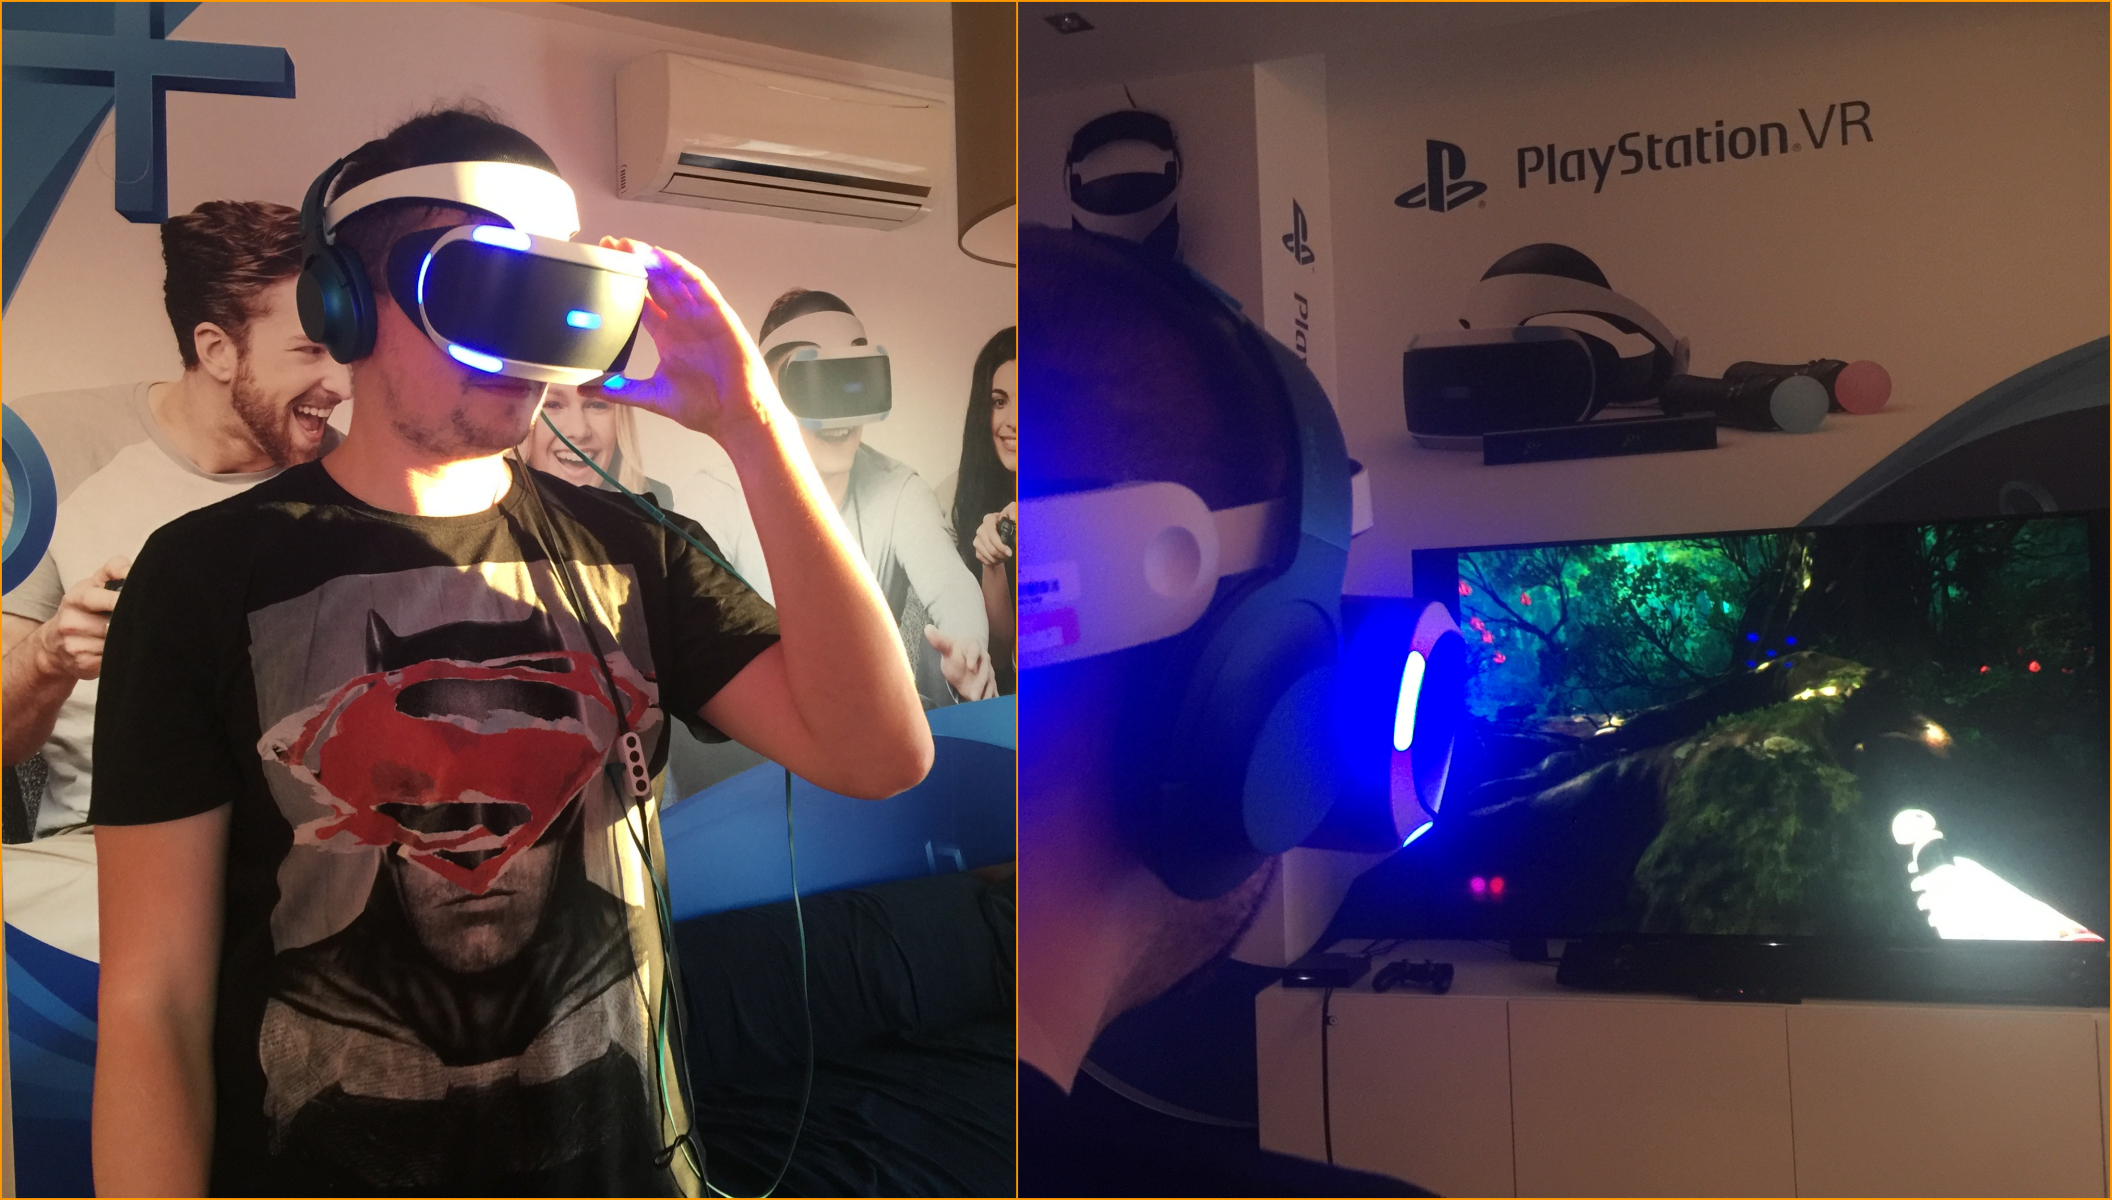 Kilka przemyśleń po godzinnej zabawie Playstation VR